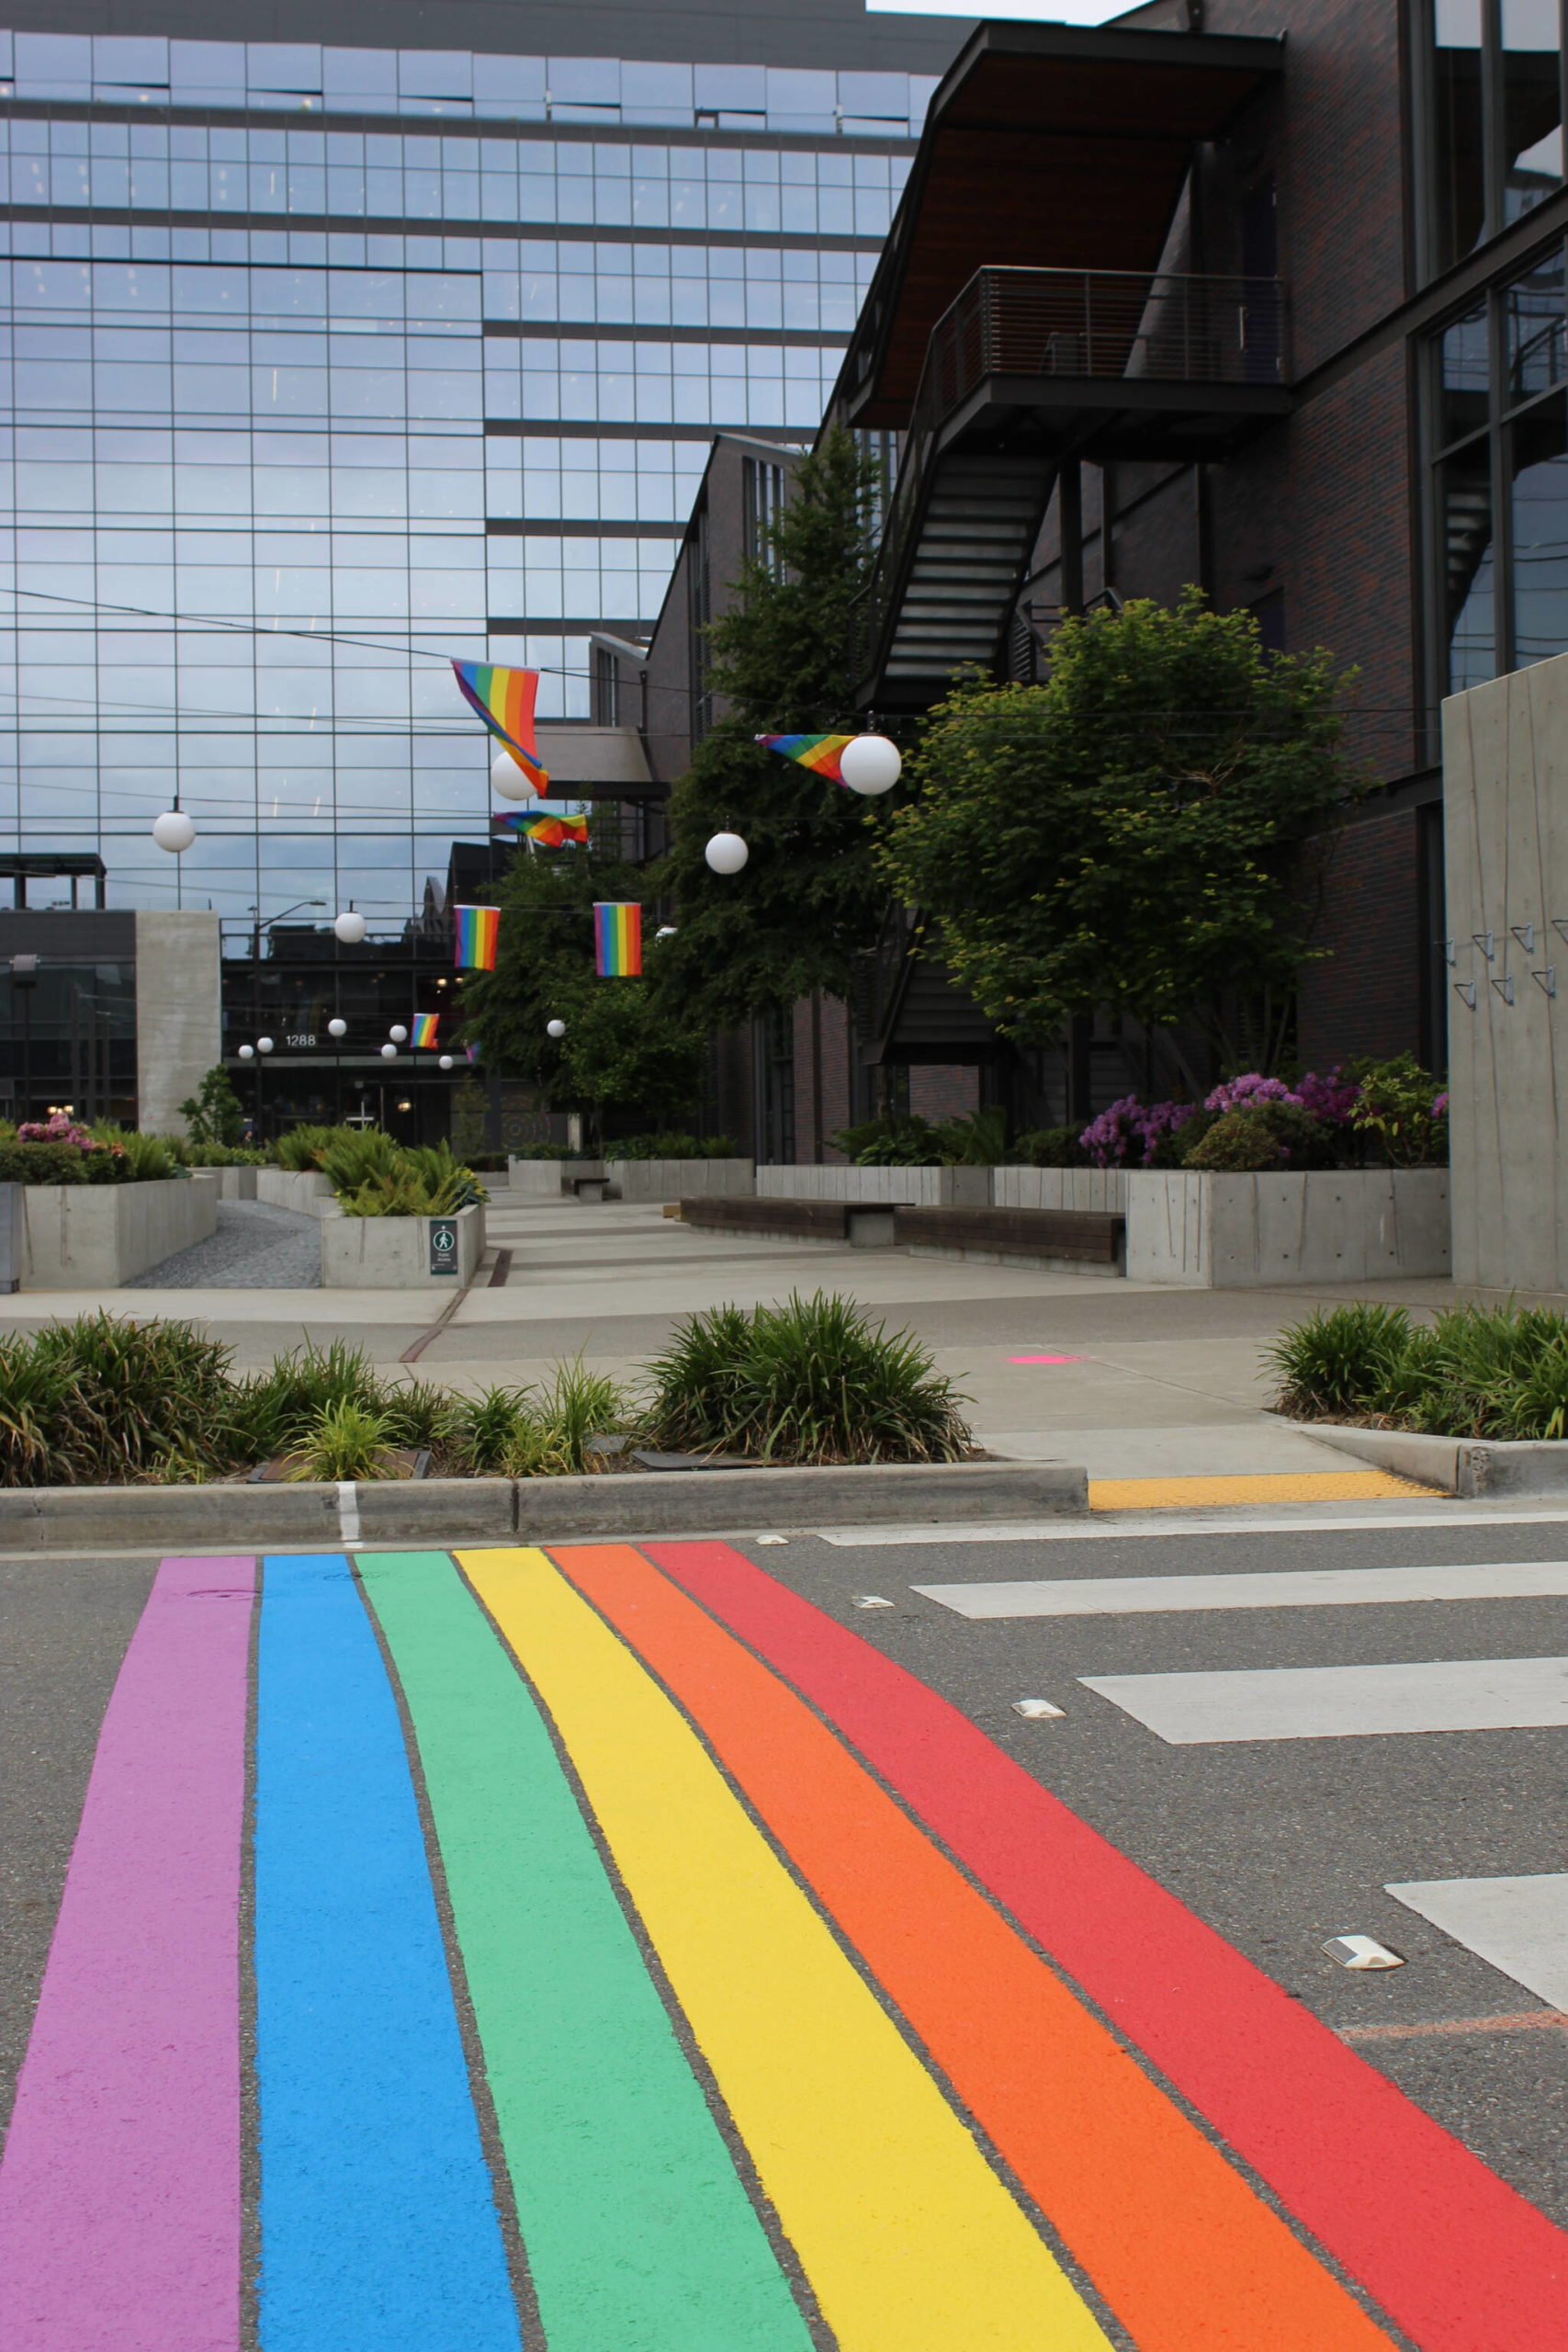 The finished rainbow crosswalk. Courtesy of Linda Hoffner.